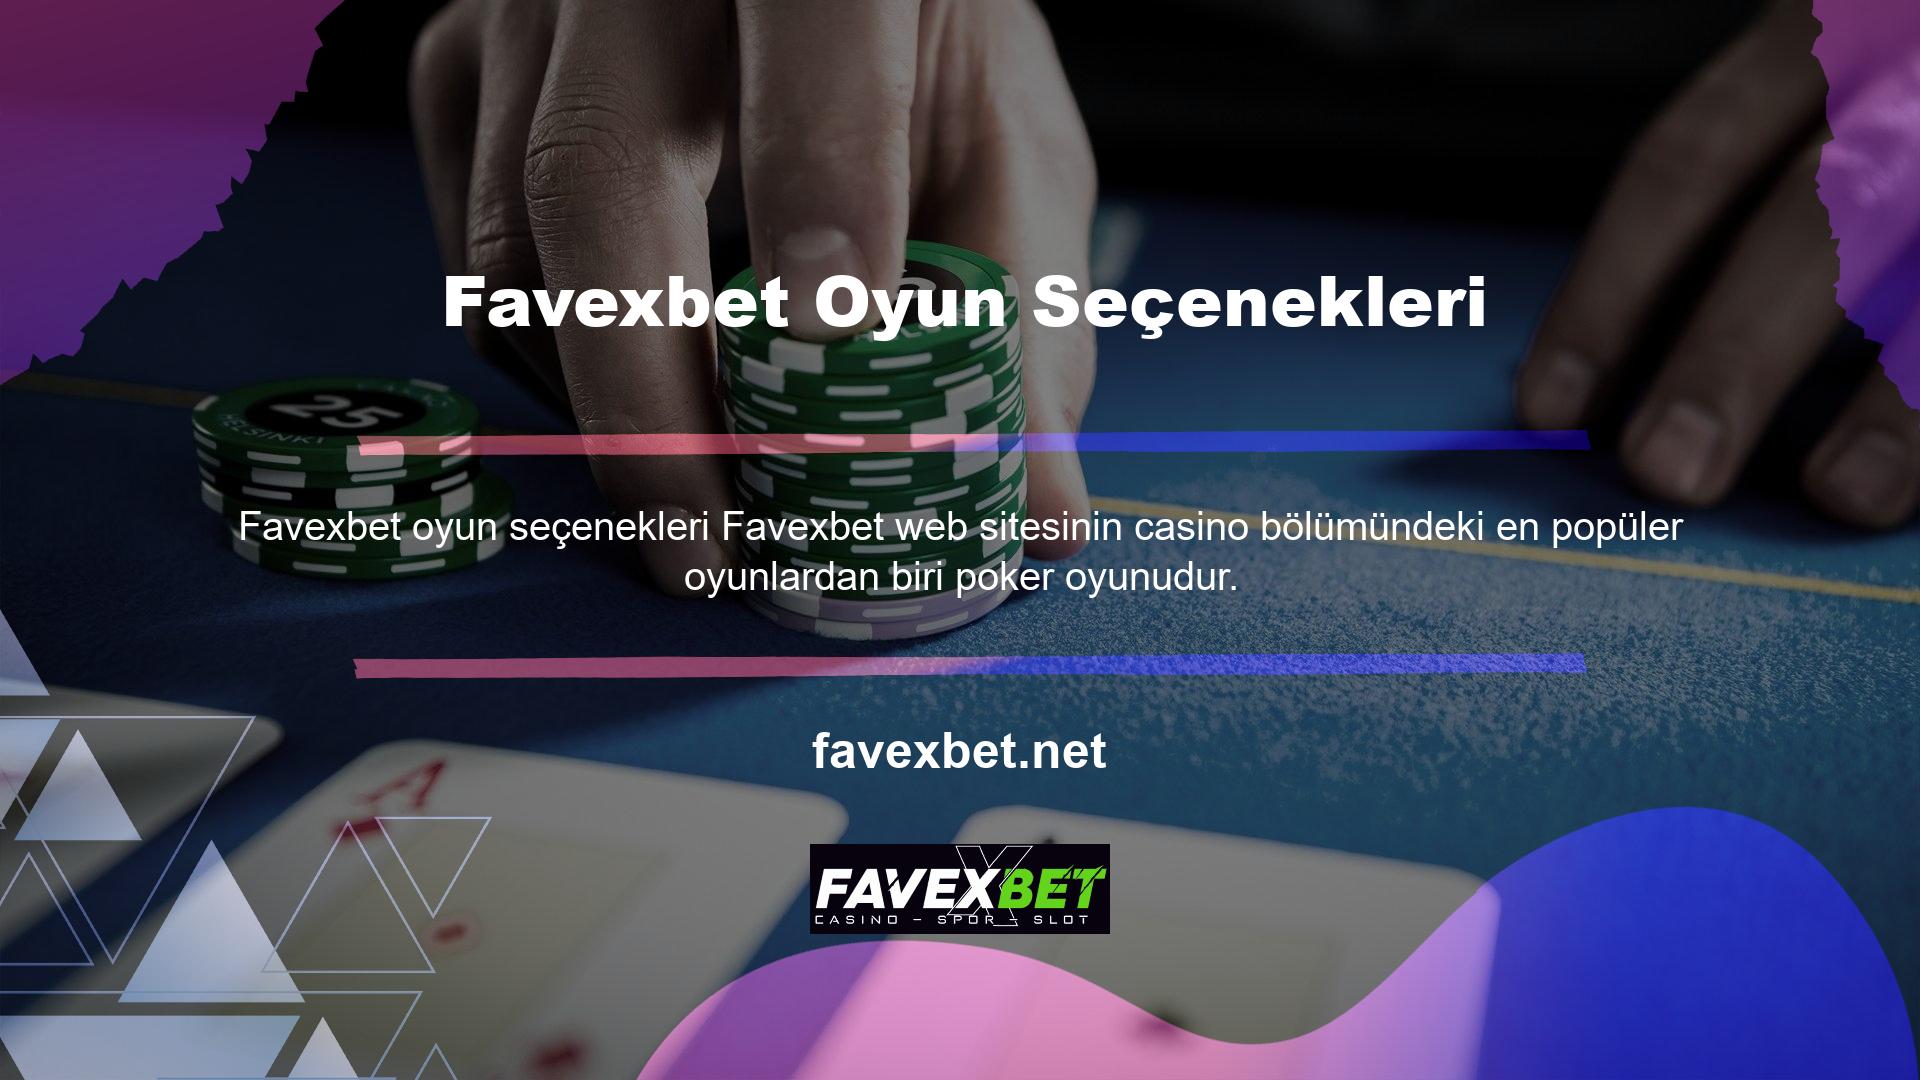 Peki Favexbet poker oyunlarına güvenebilir misiniz? Sitenin genel altyapısına bakıldığında poker oyunu markası oldukça kalitelidir